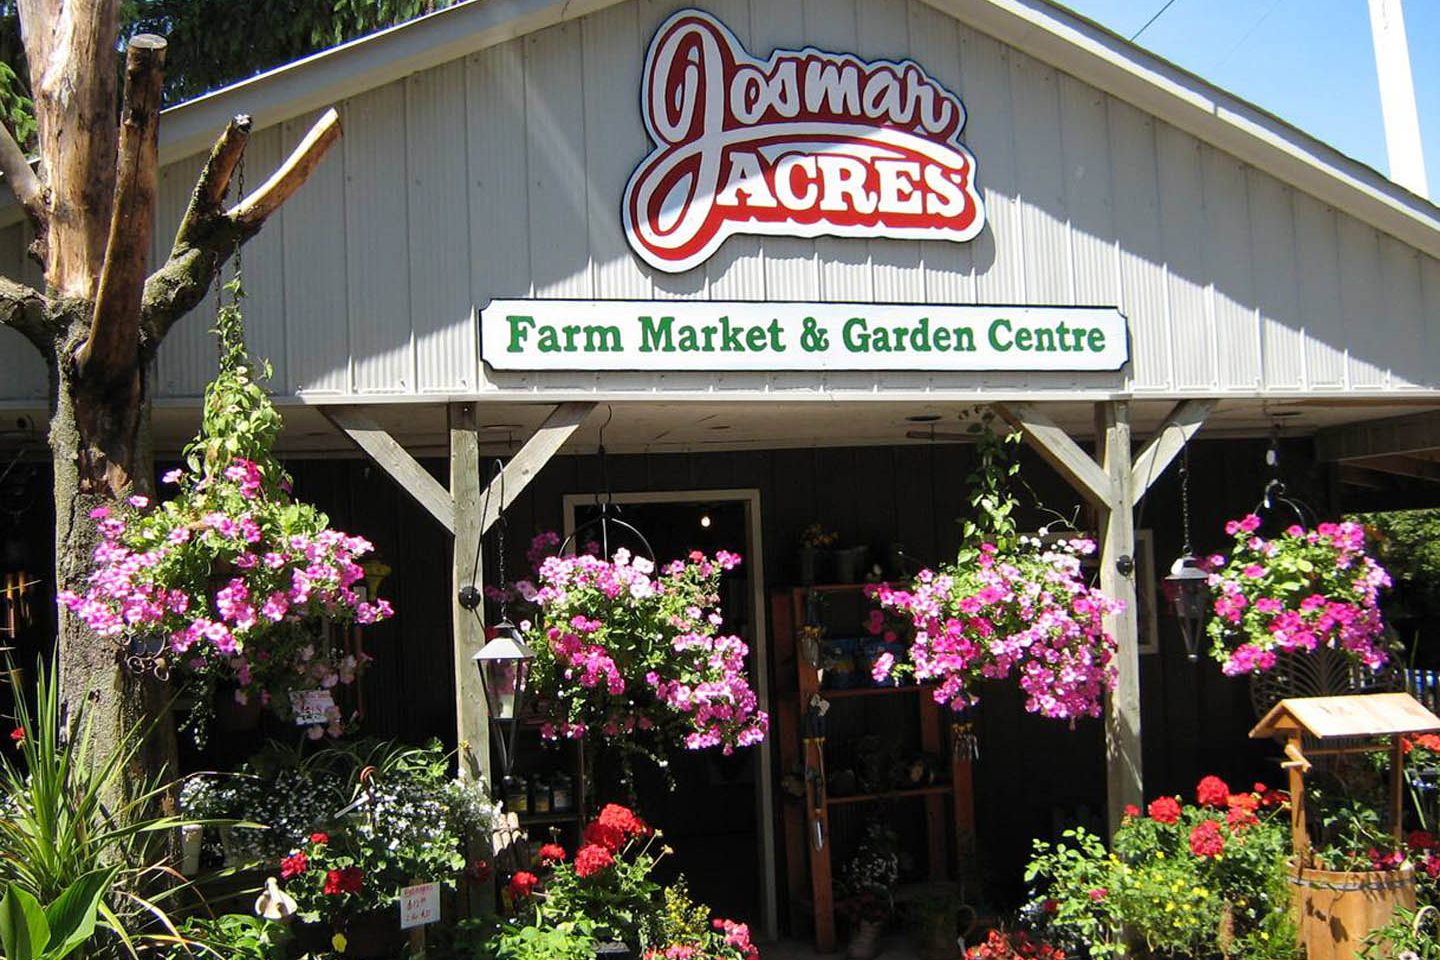 Josmar Acres Farm Market & Garden Centre